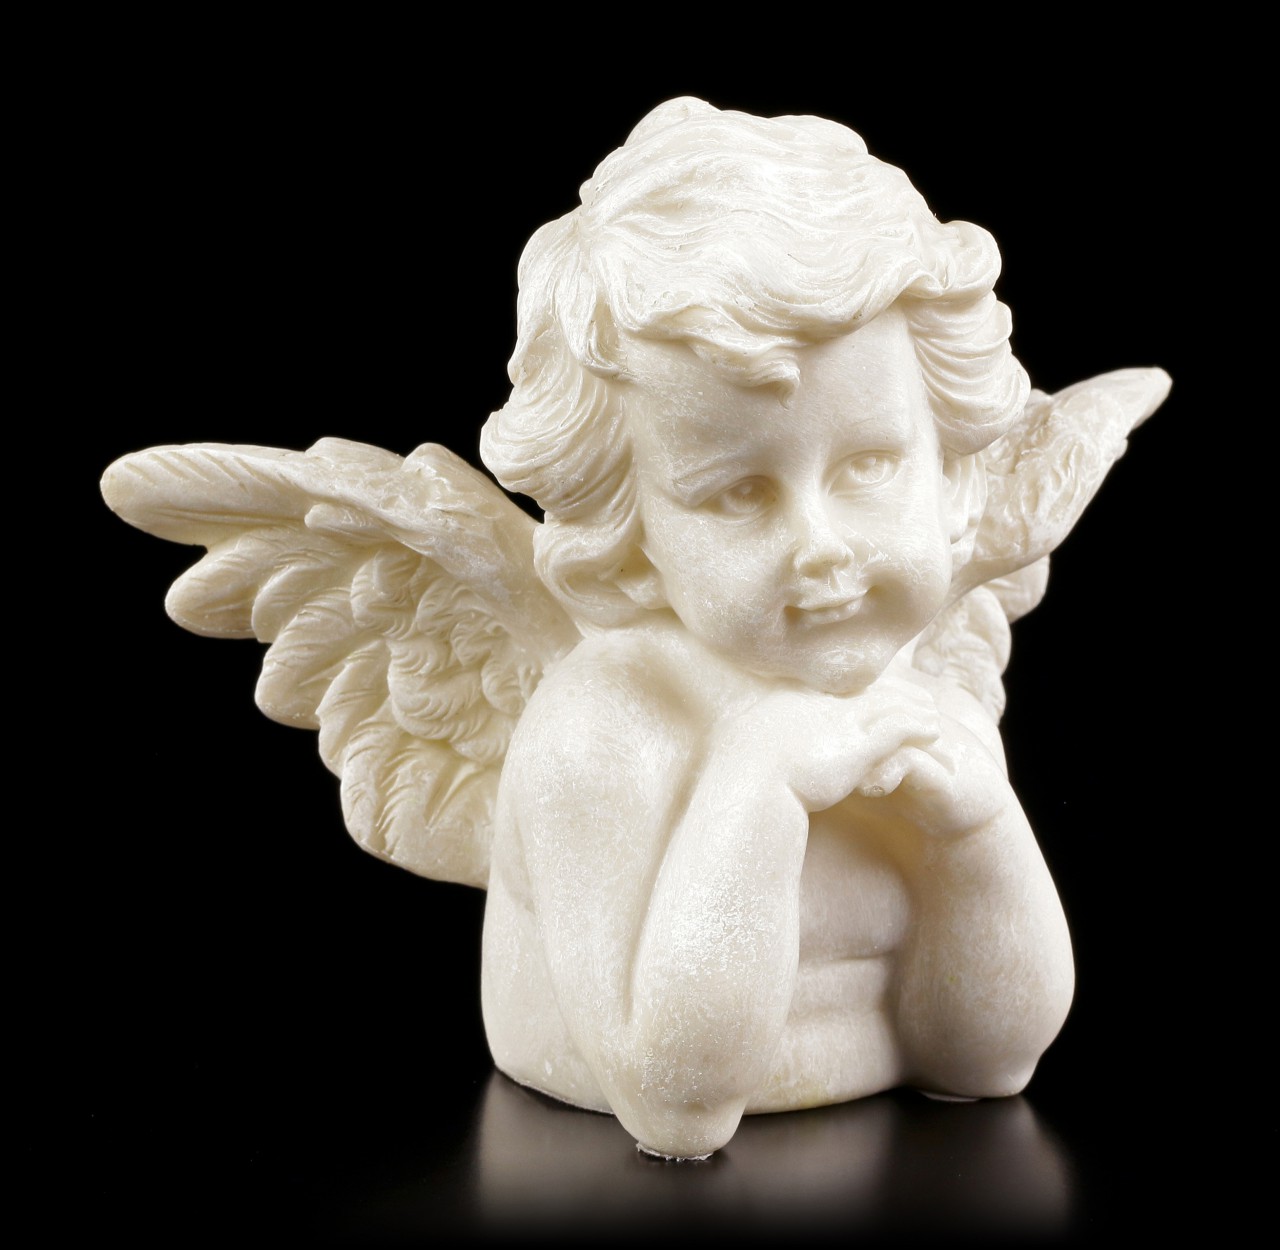 Angel Garden Figurine - Little Cherub observes